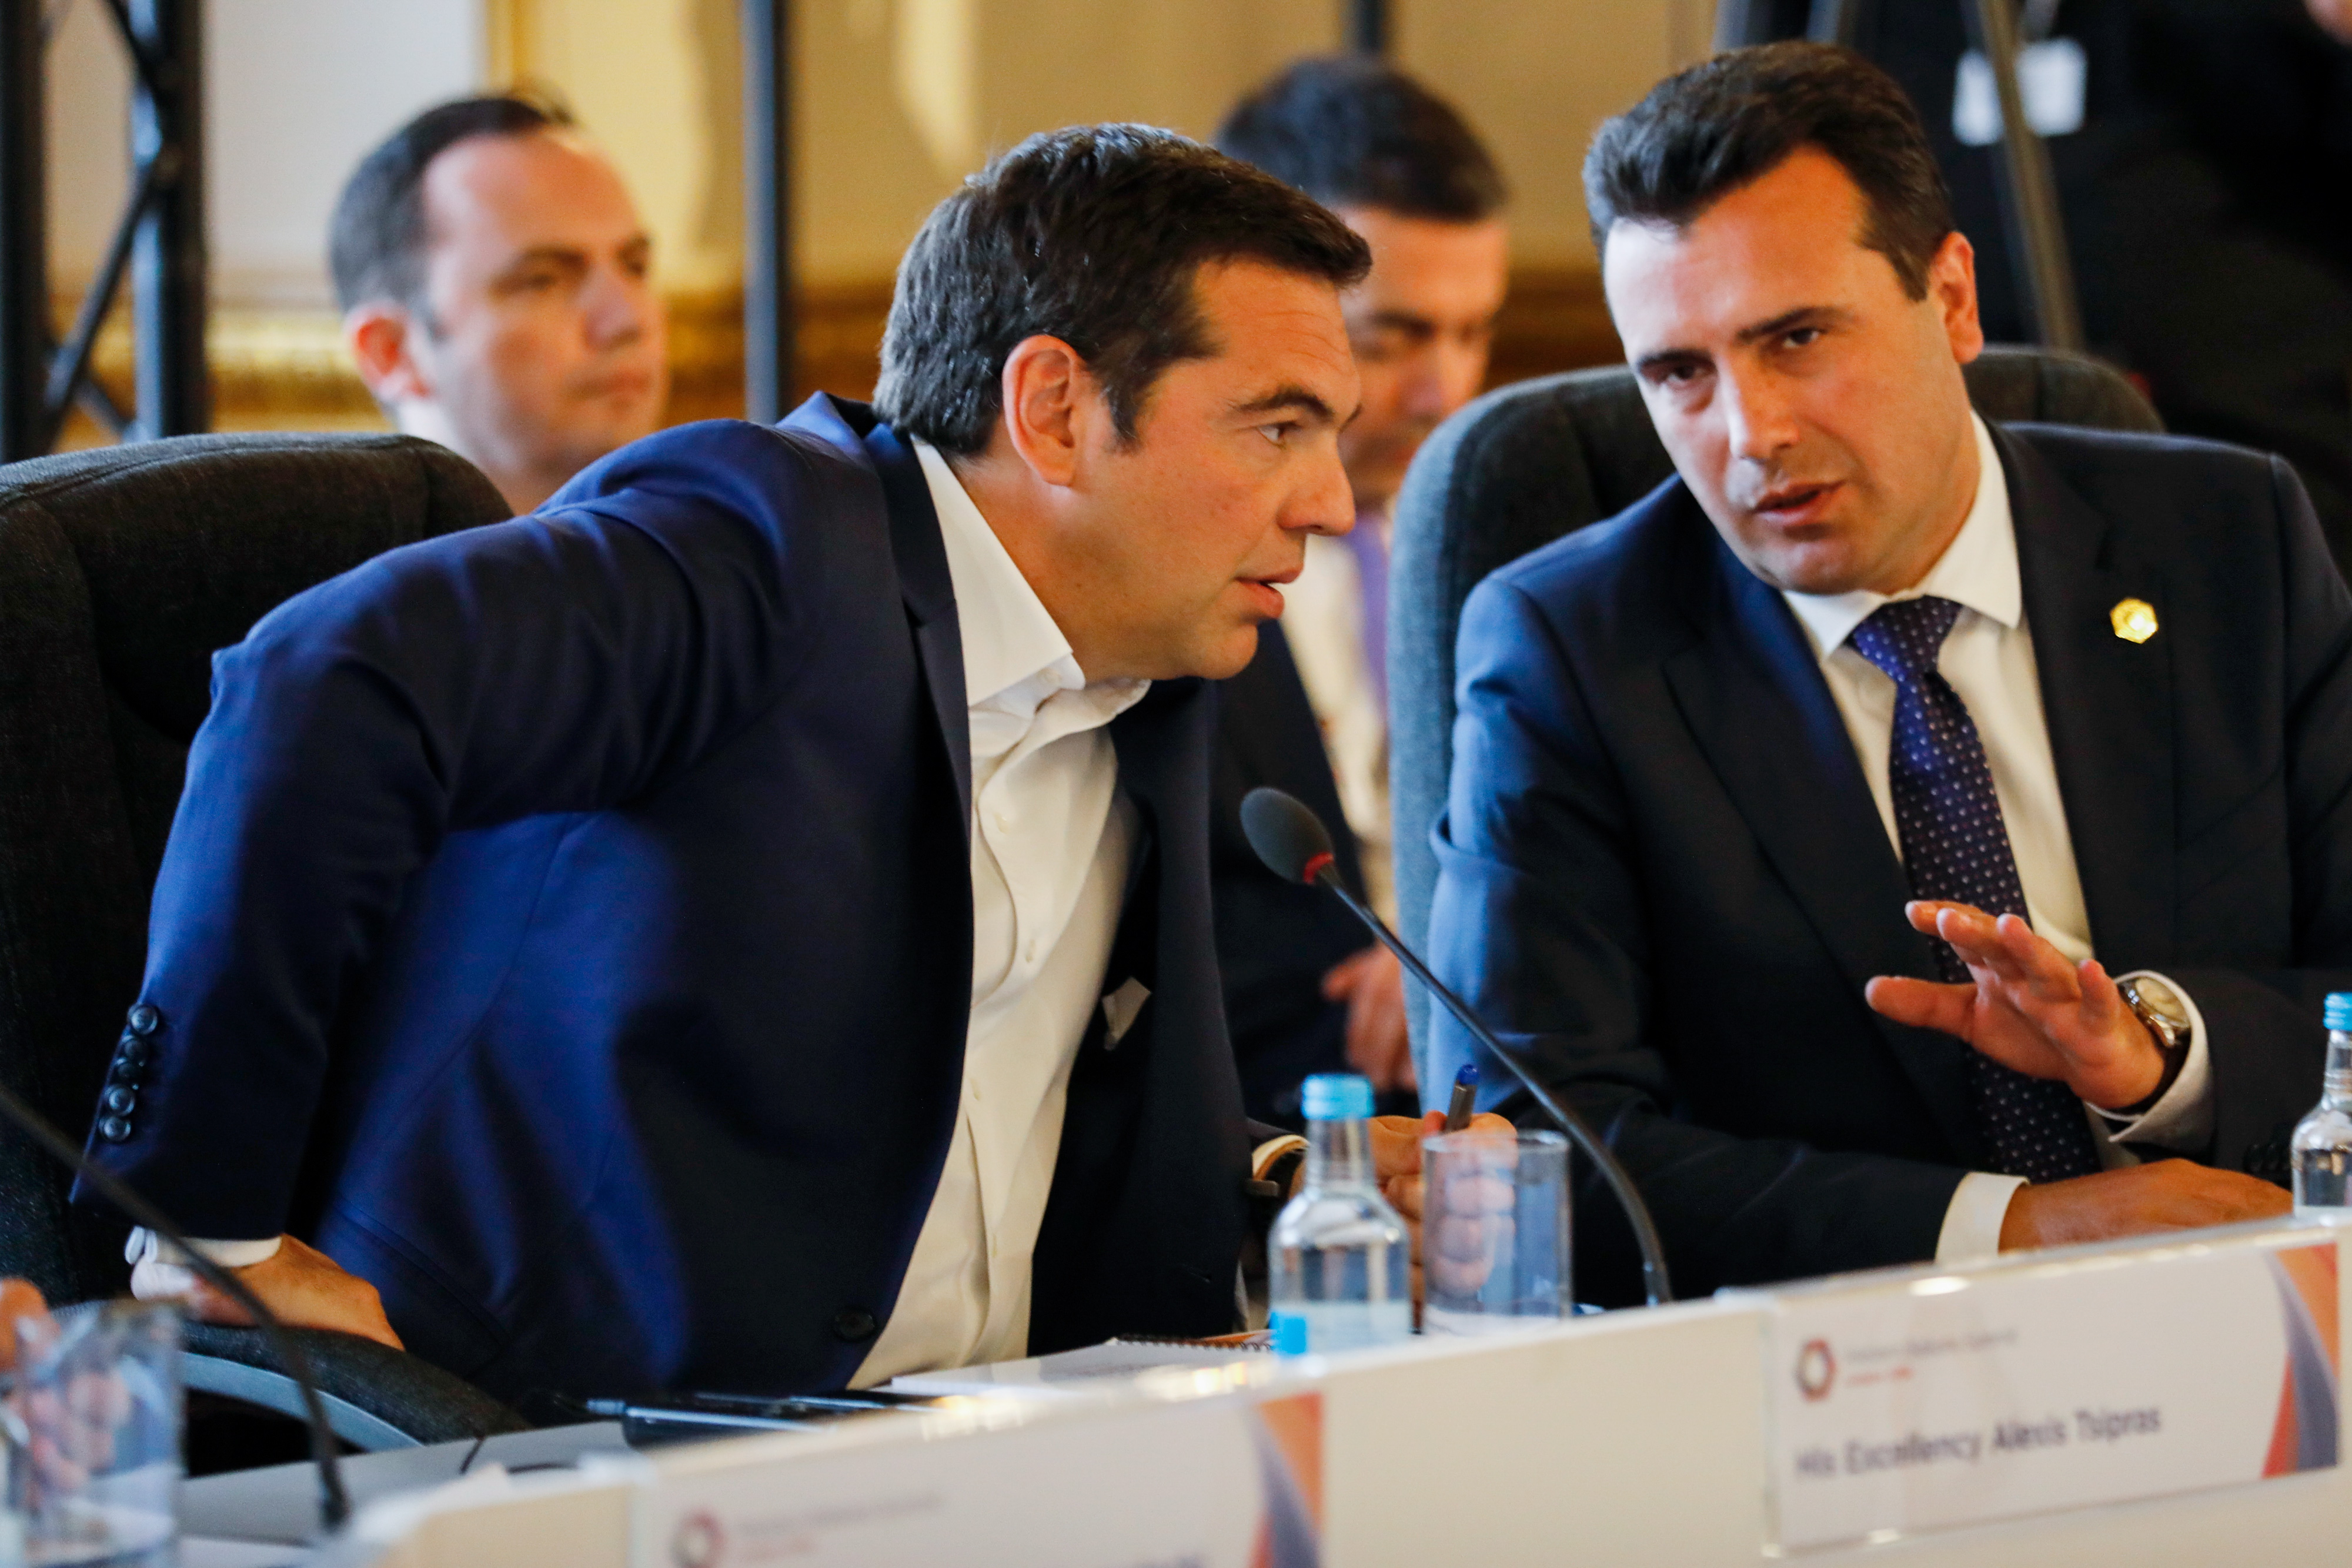 Ευτυχής ο Ζάεφ για την πρόσκληση της ΠΓΔΜ στο ΝΑΤΟ